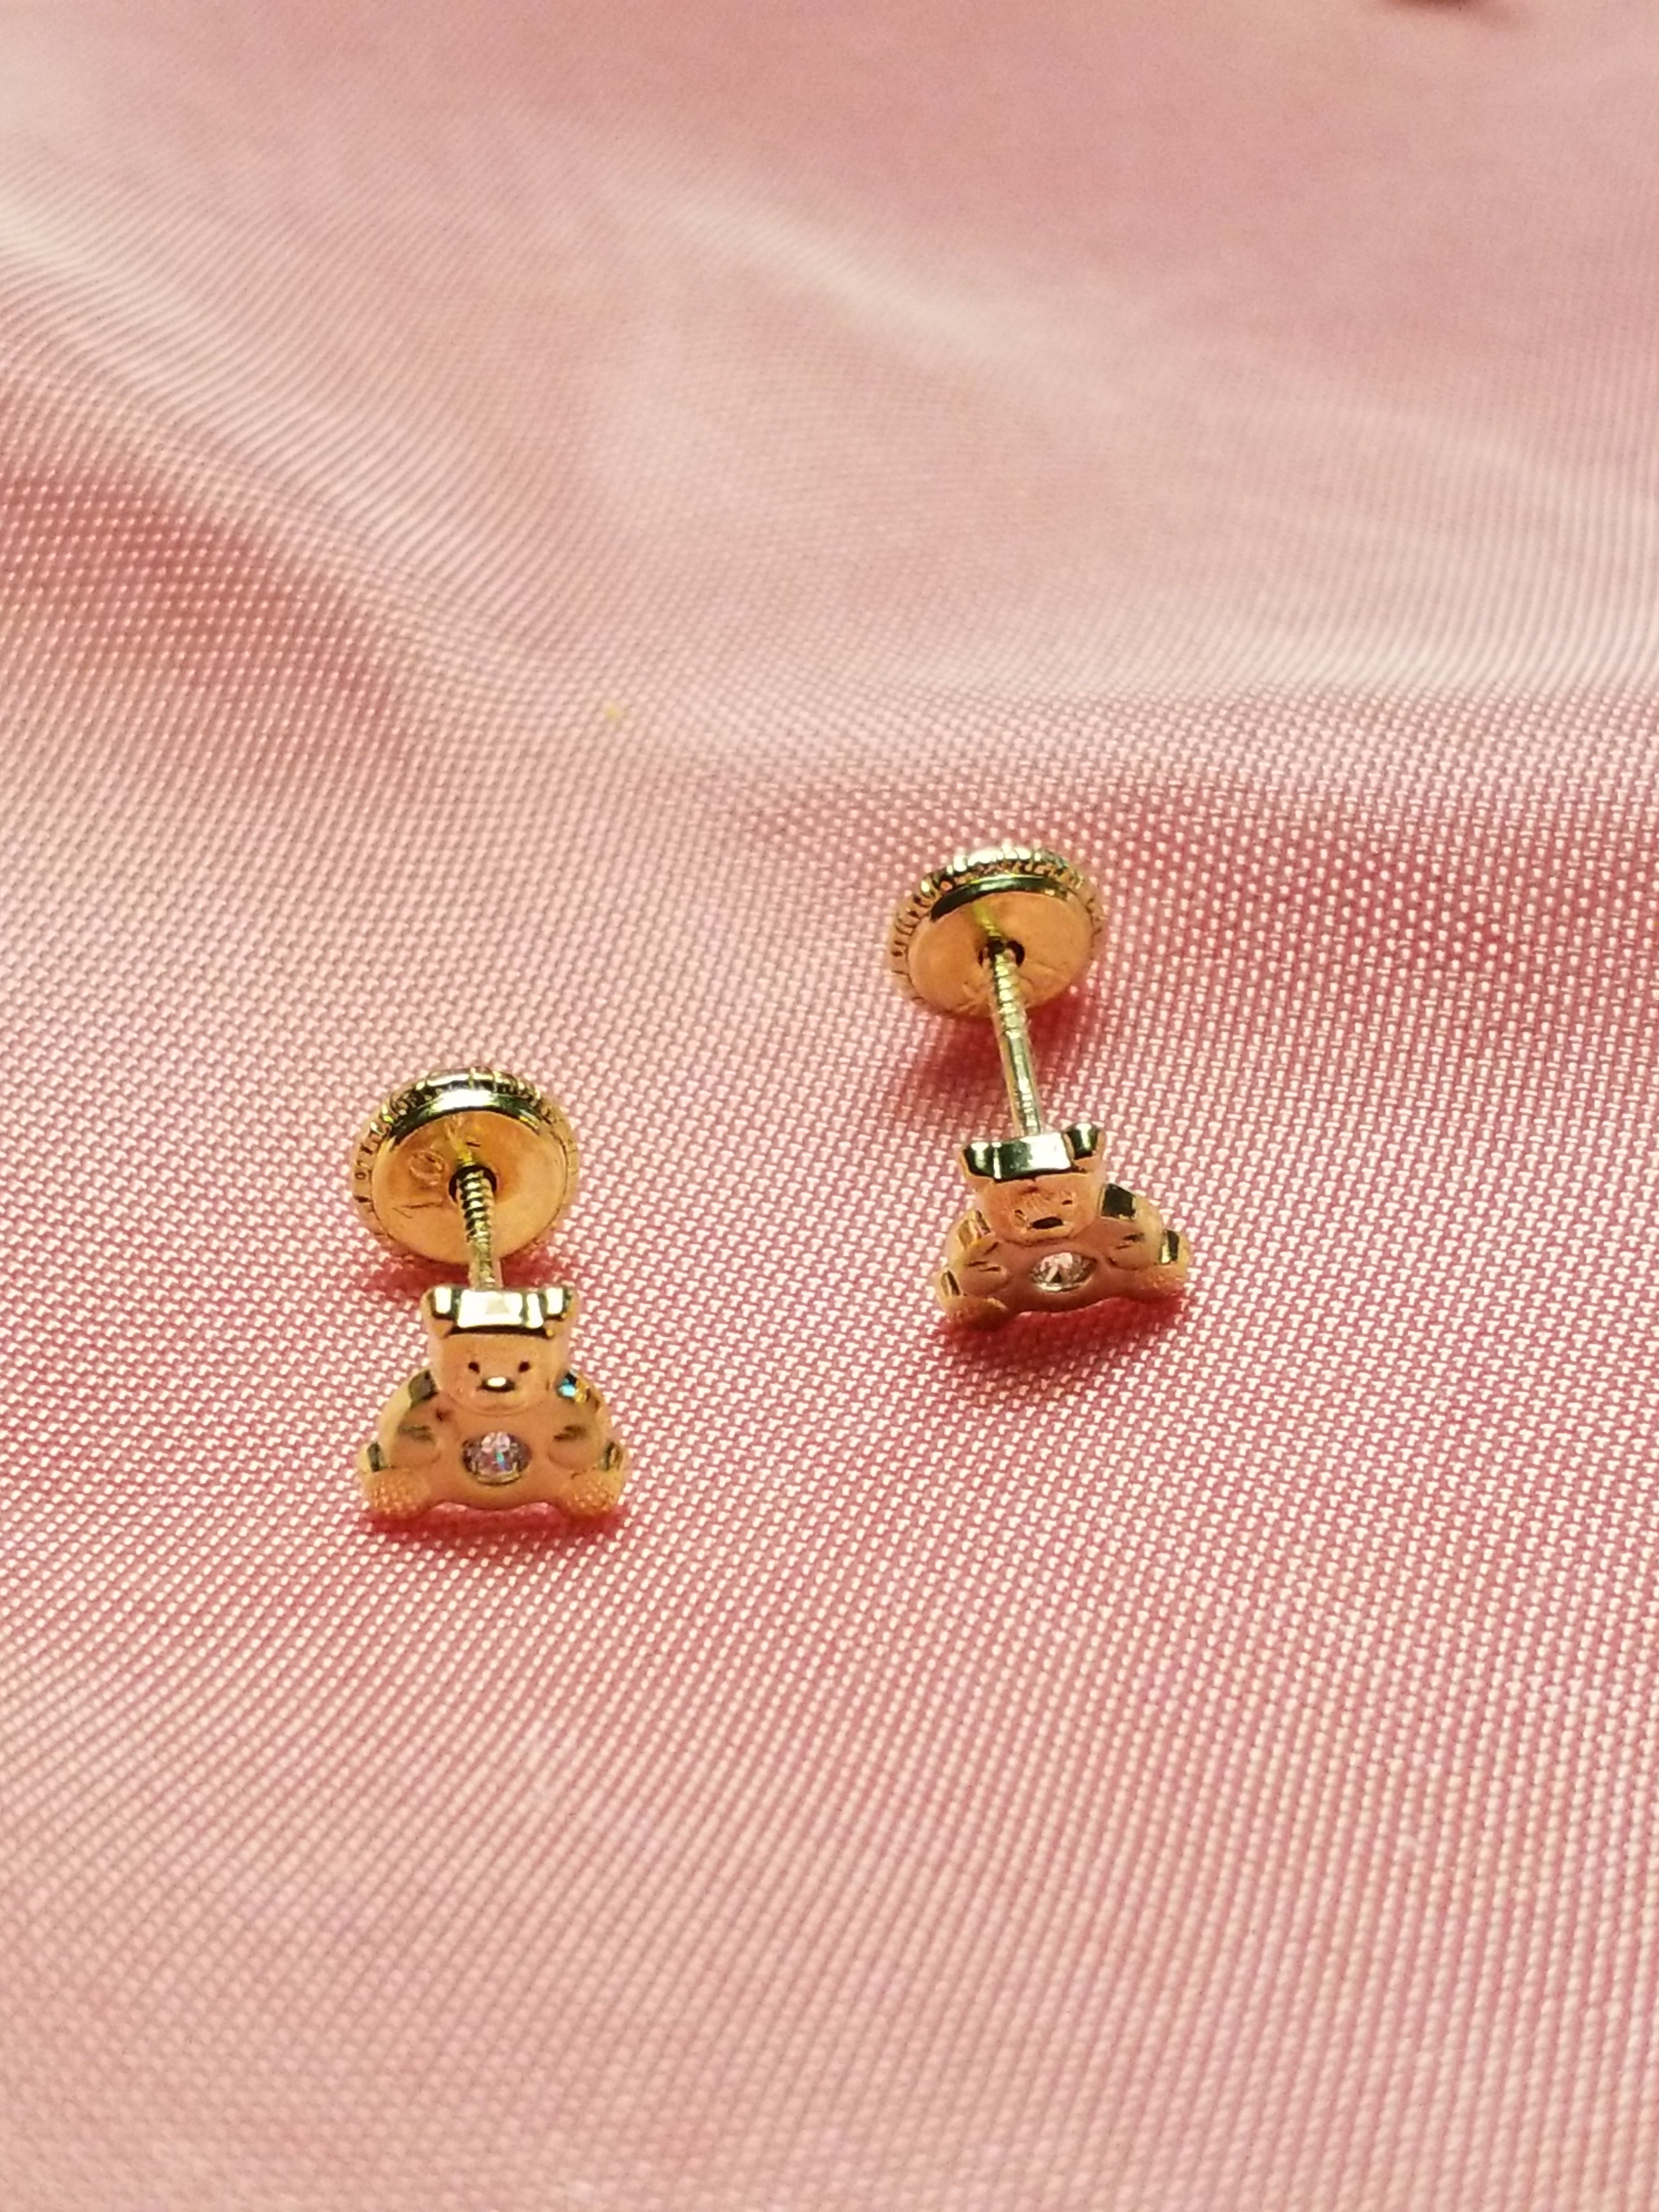 Children's 10Kt Earrings - Teddy Bears - Screw Backs